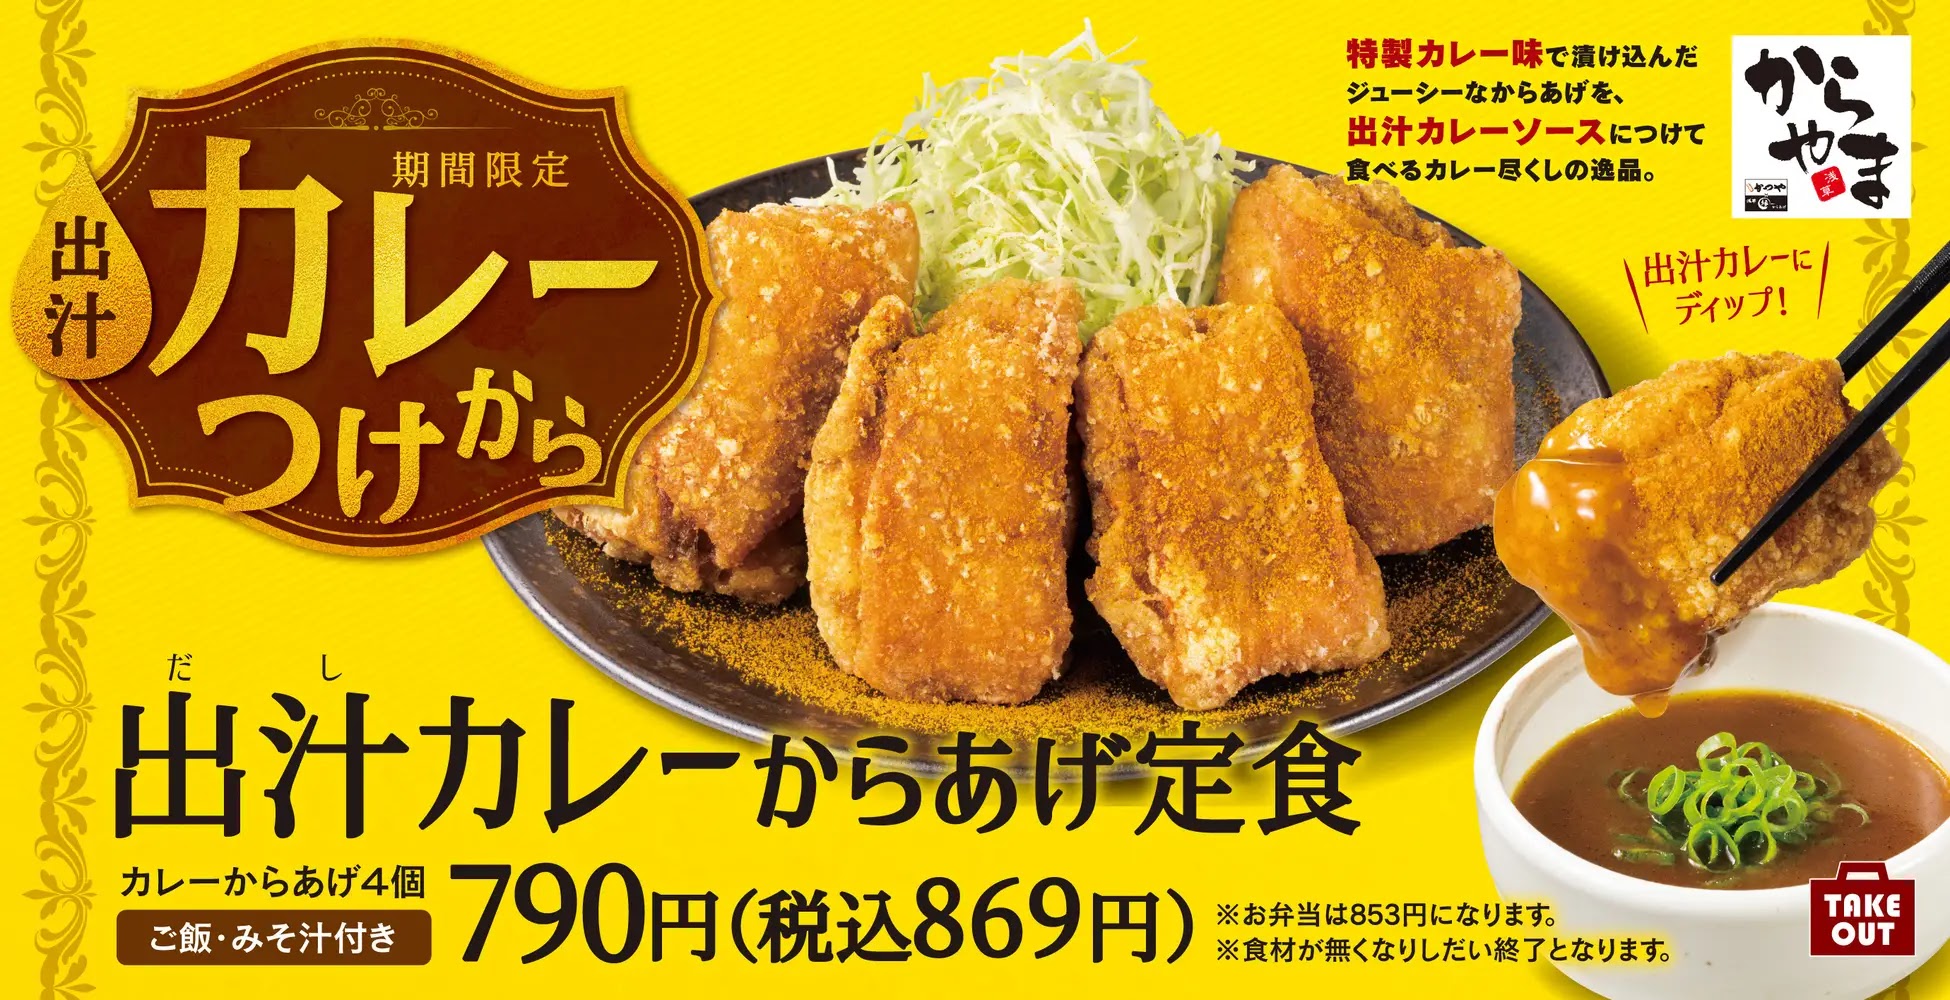 日本「からやま」炸雞專賣店期間限定菜單「高湯咖哩炸雞定食」登場，用辣味與高湯，驅散梅雨季中的炎熱迎接夏天